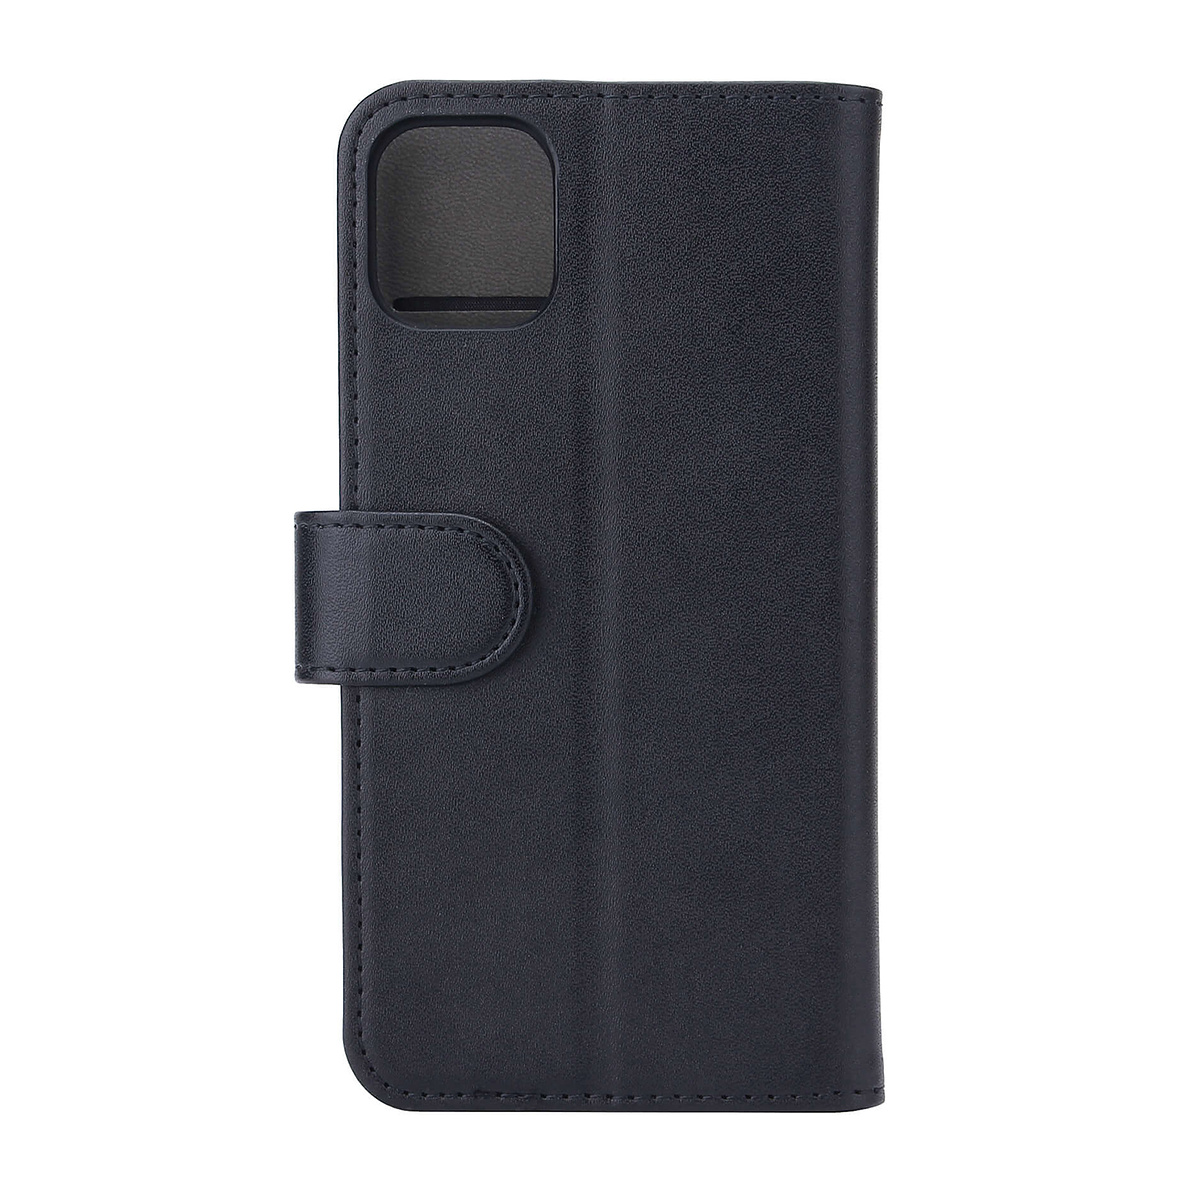 Gear plånboksväska, iPhone 11, svart